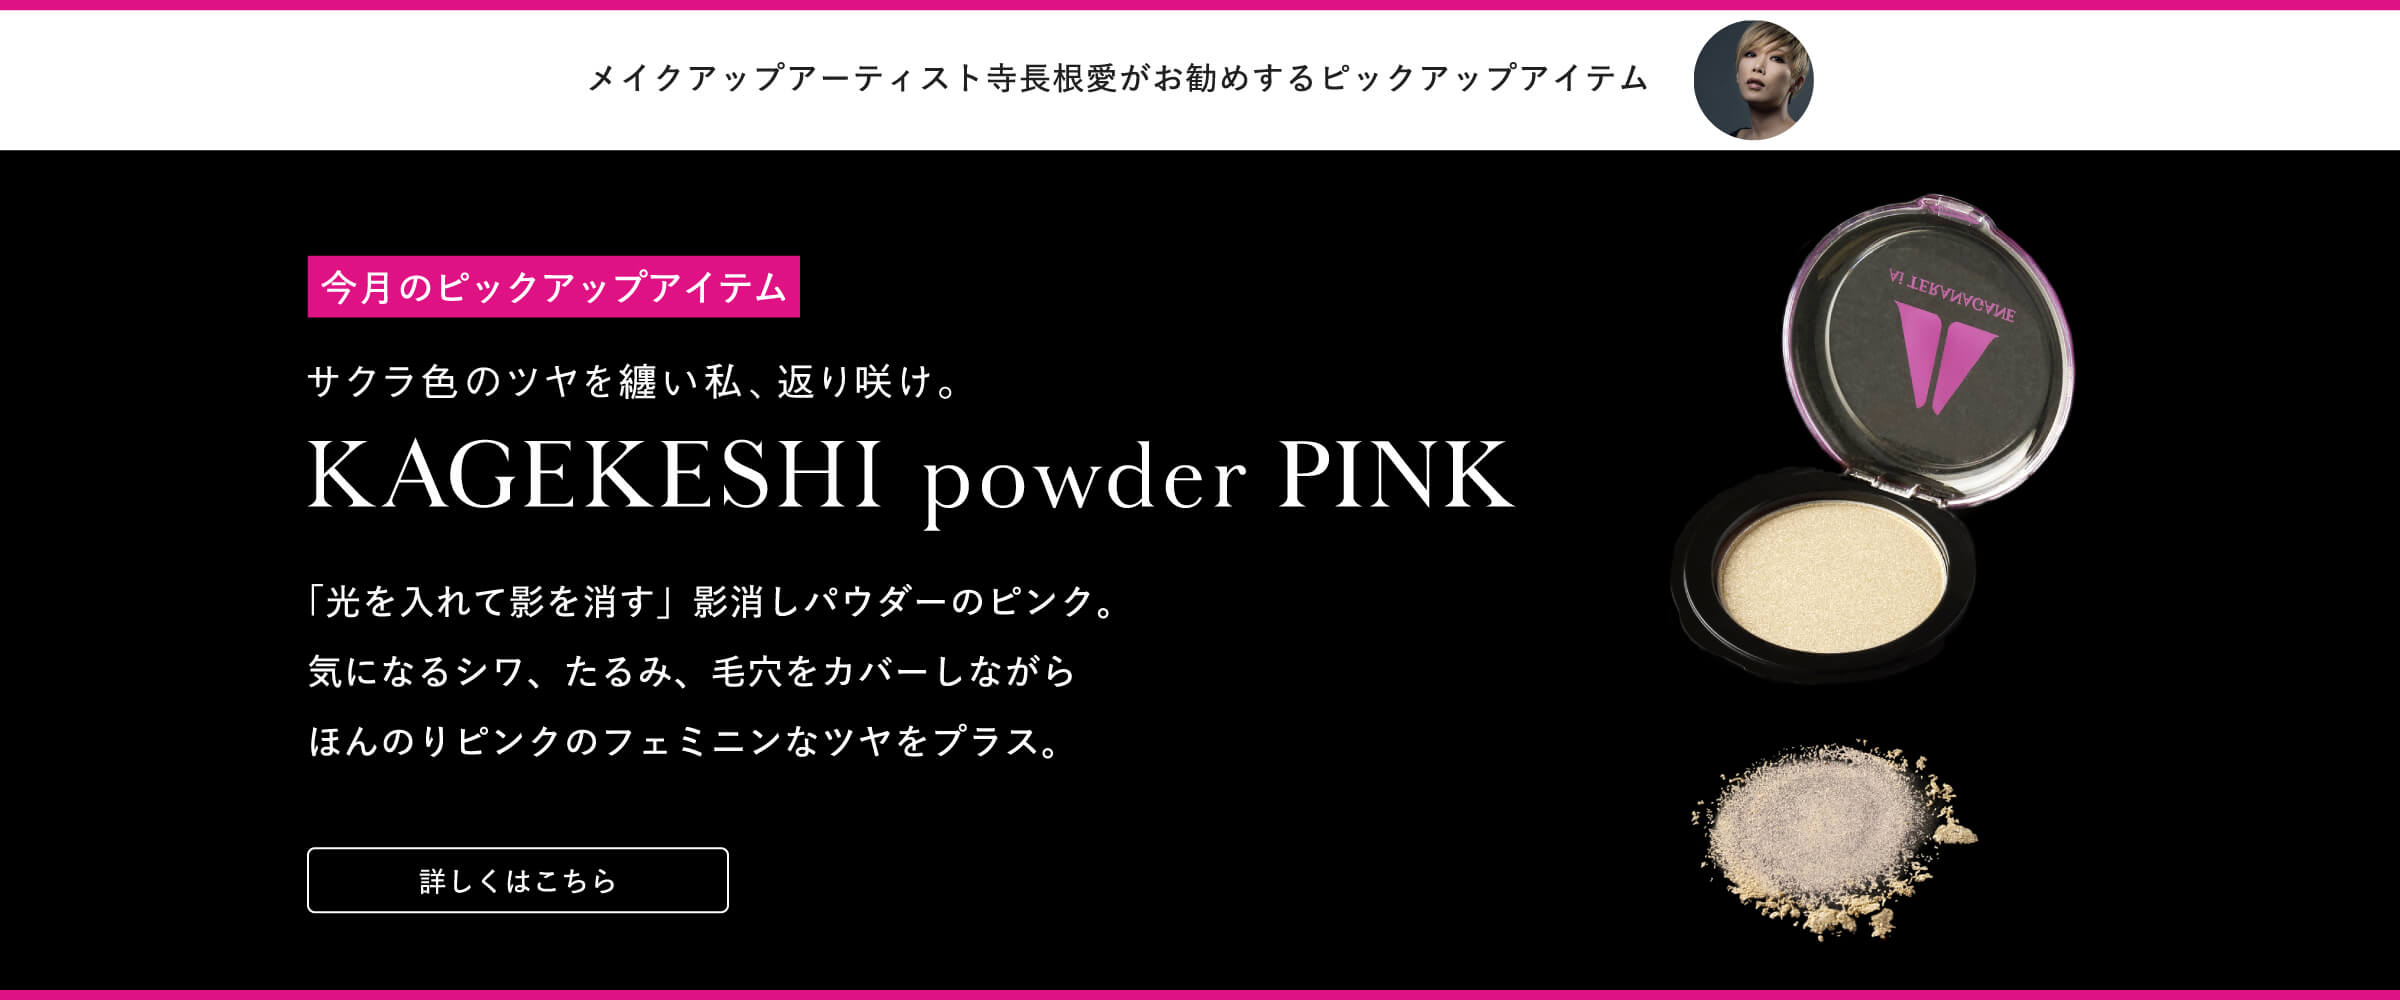 今月のピックアップアイテム KAGEKESHI powder PINK